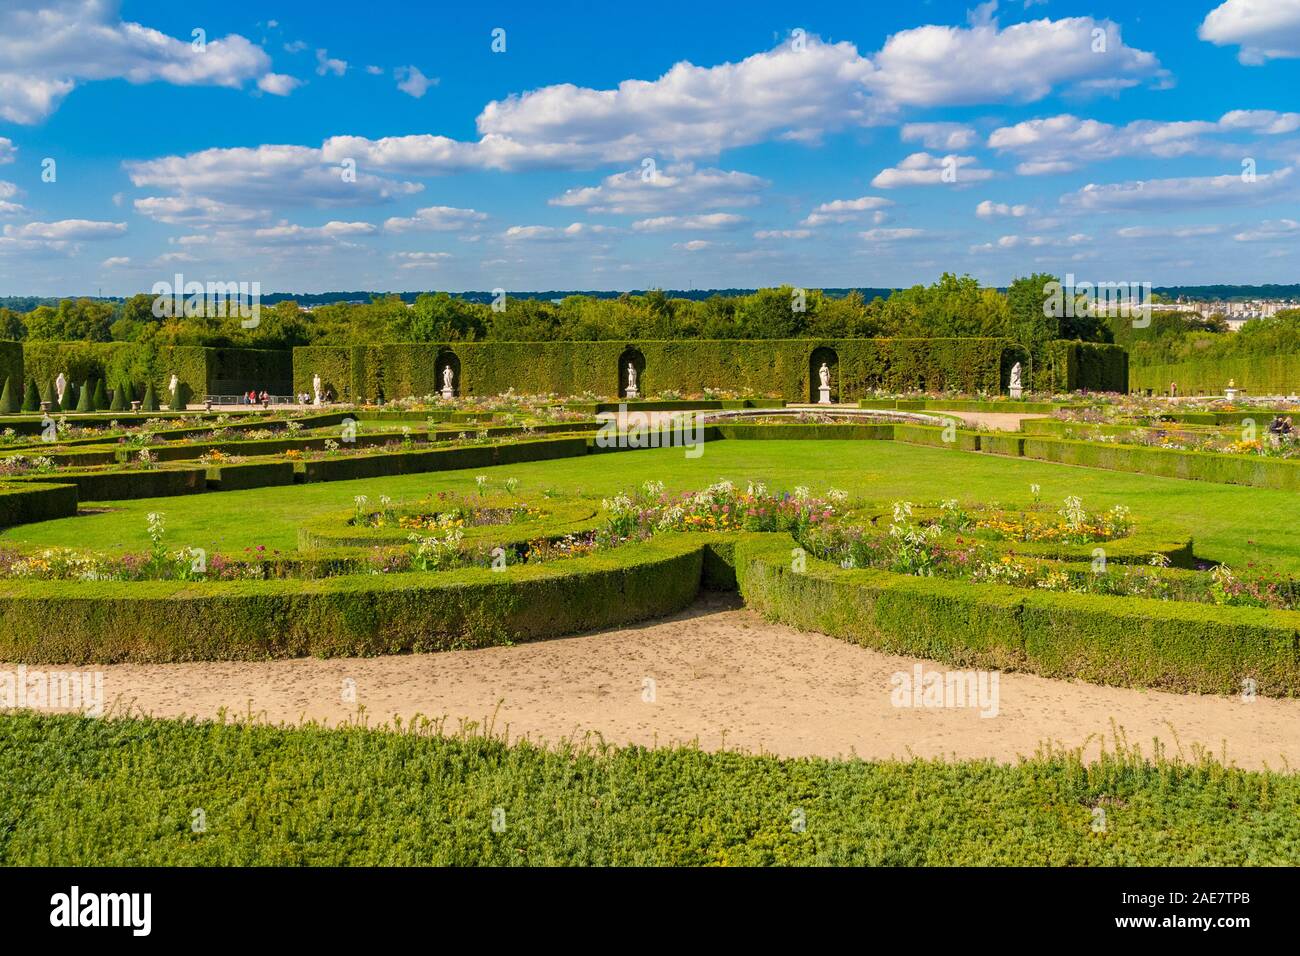 Schöne Aussicht auf eine typische klassische Französischer Garten mit gepflegten Rasen, Blumen, Sträuchern, Skulpturen und Springbrunnen. Dargestellt ist die Latona... Stockfoto